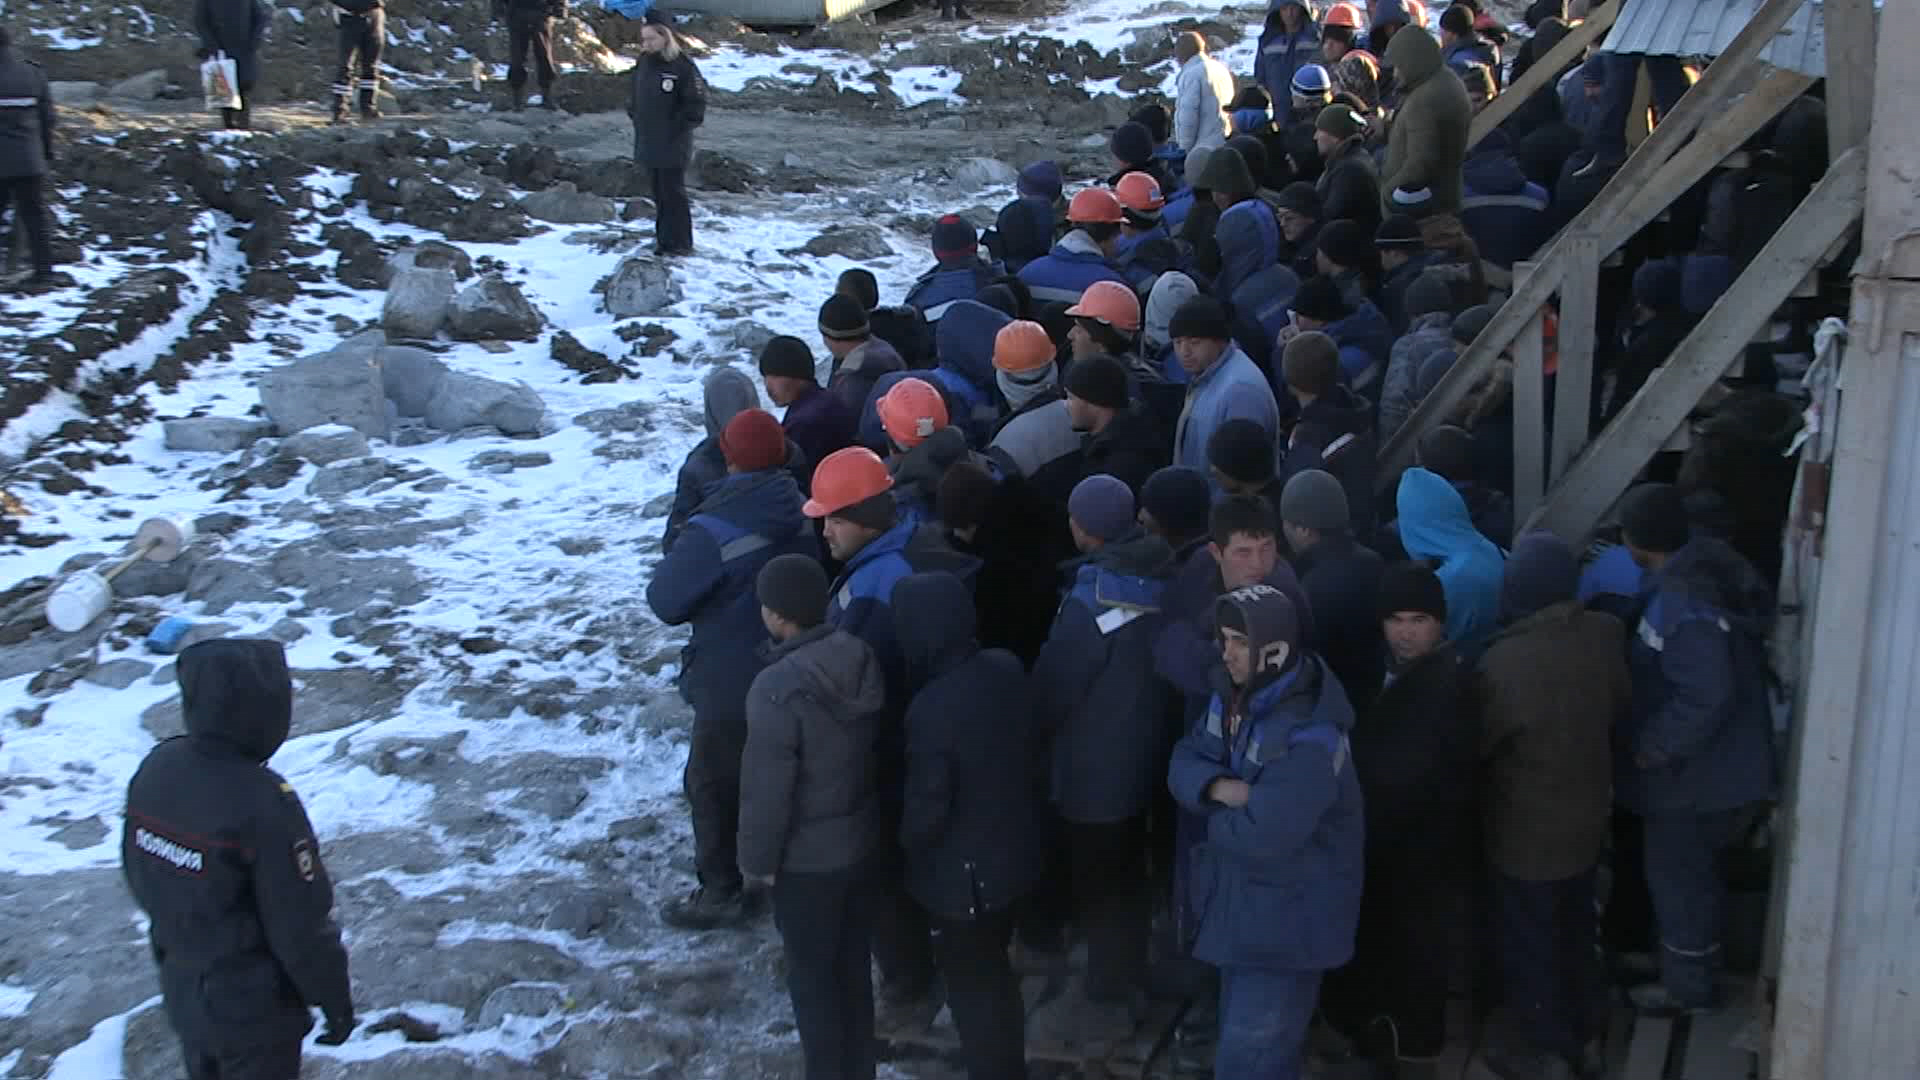 22 нелегальных мигранта выдворены из Екатеринбурга (ФОТО)